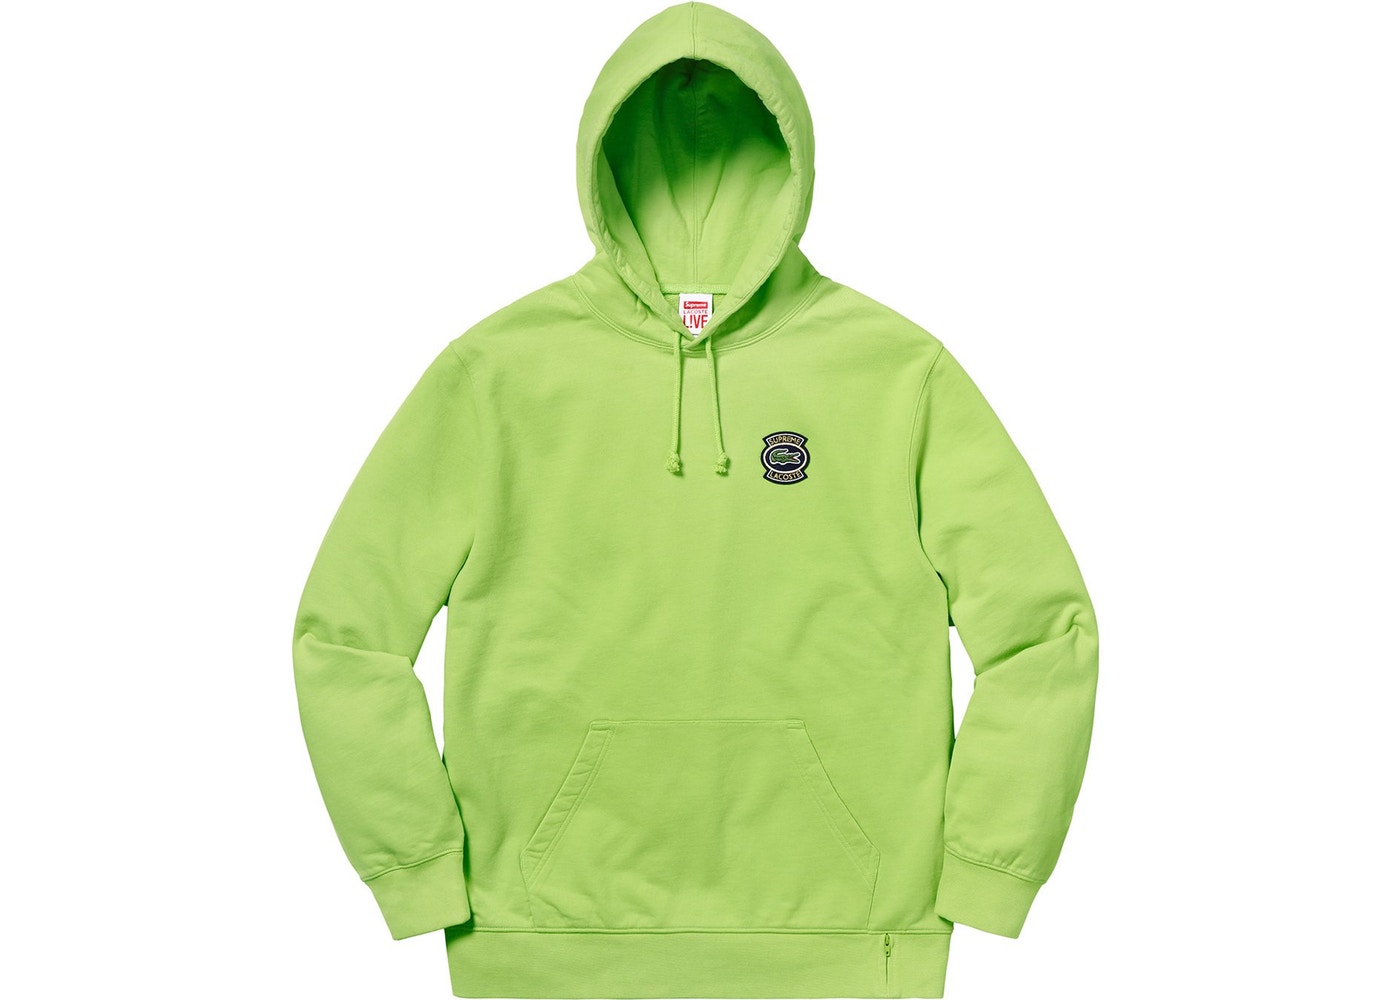 Supreme / LACOSTE  Hooded Sweatshirt